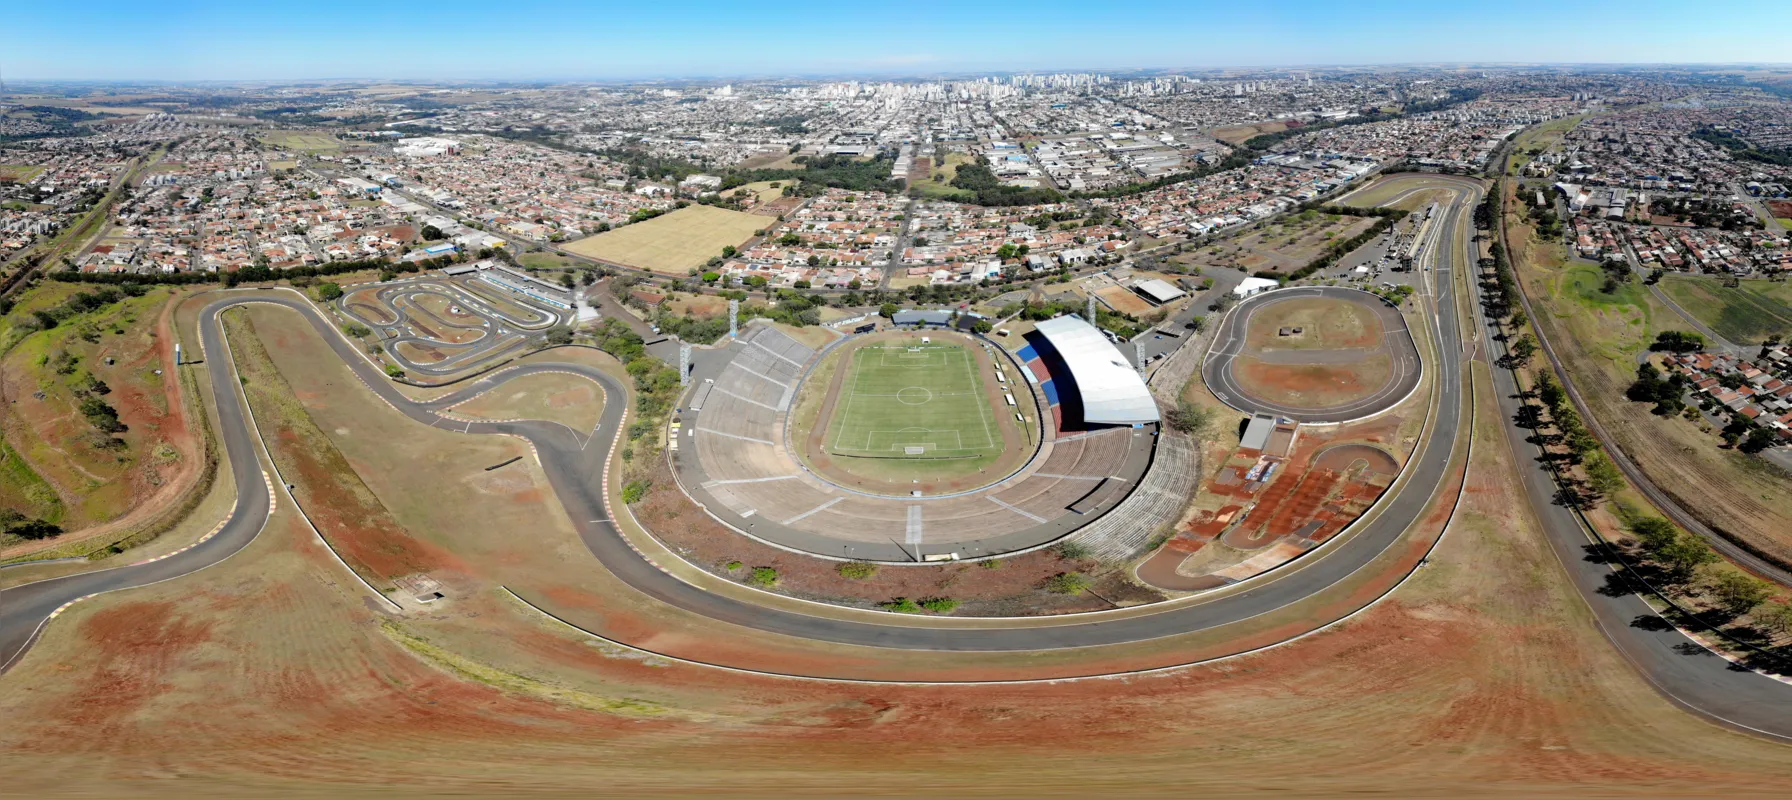 Inaugurado em 1992, o Autódromo Internacional passou a se chamar Ayrton Senna após a aprovação de um projeto de lei em junho de 1994